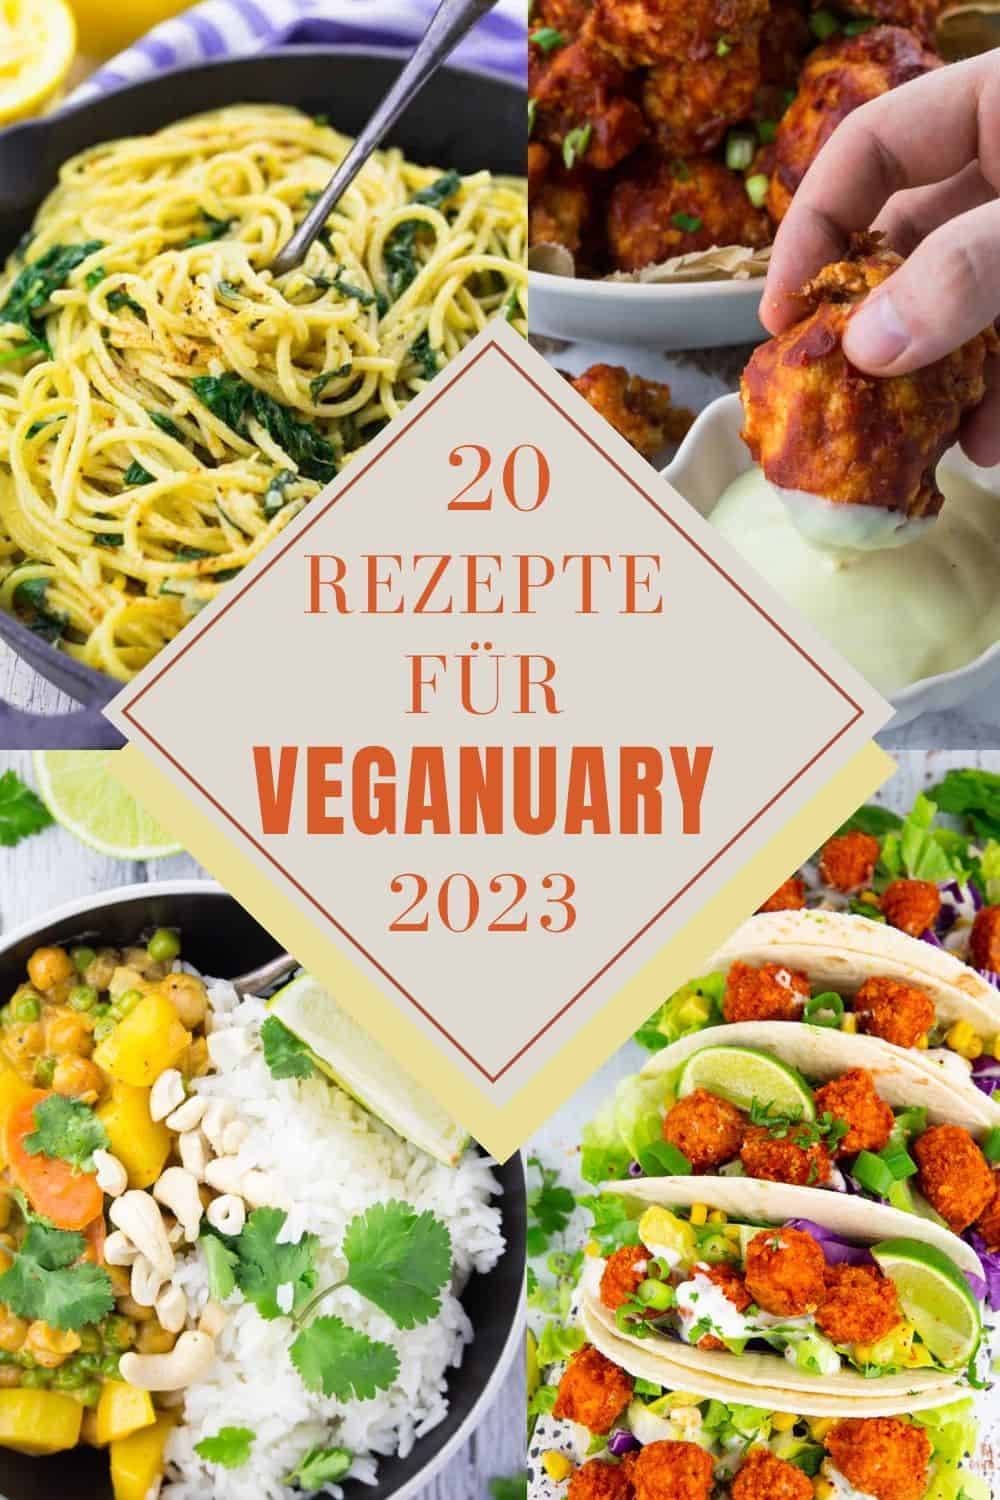 eine Collage aus vier Fotos mit der Aufschrift "Veganuary 2023"